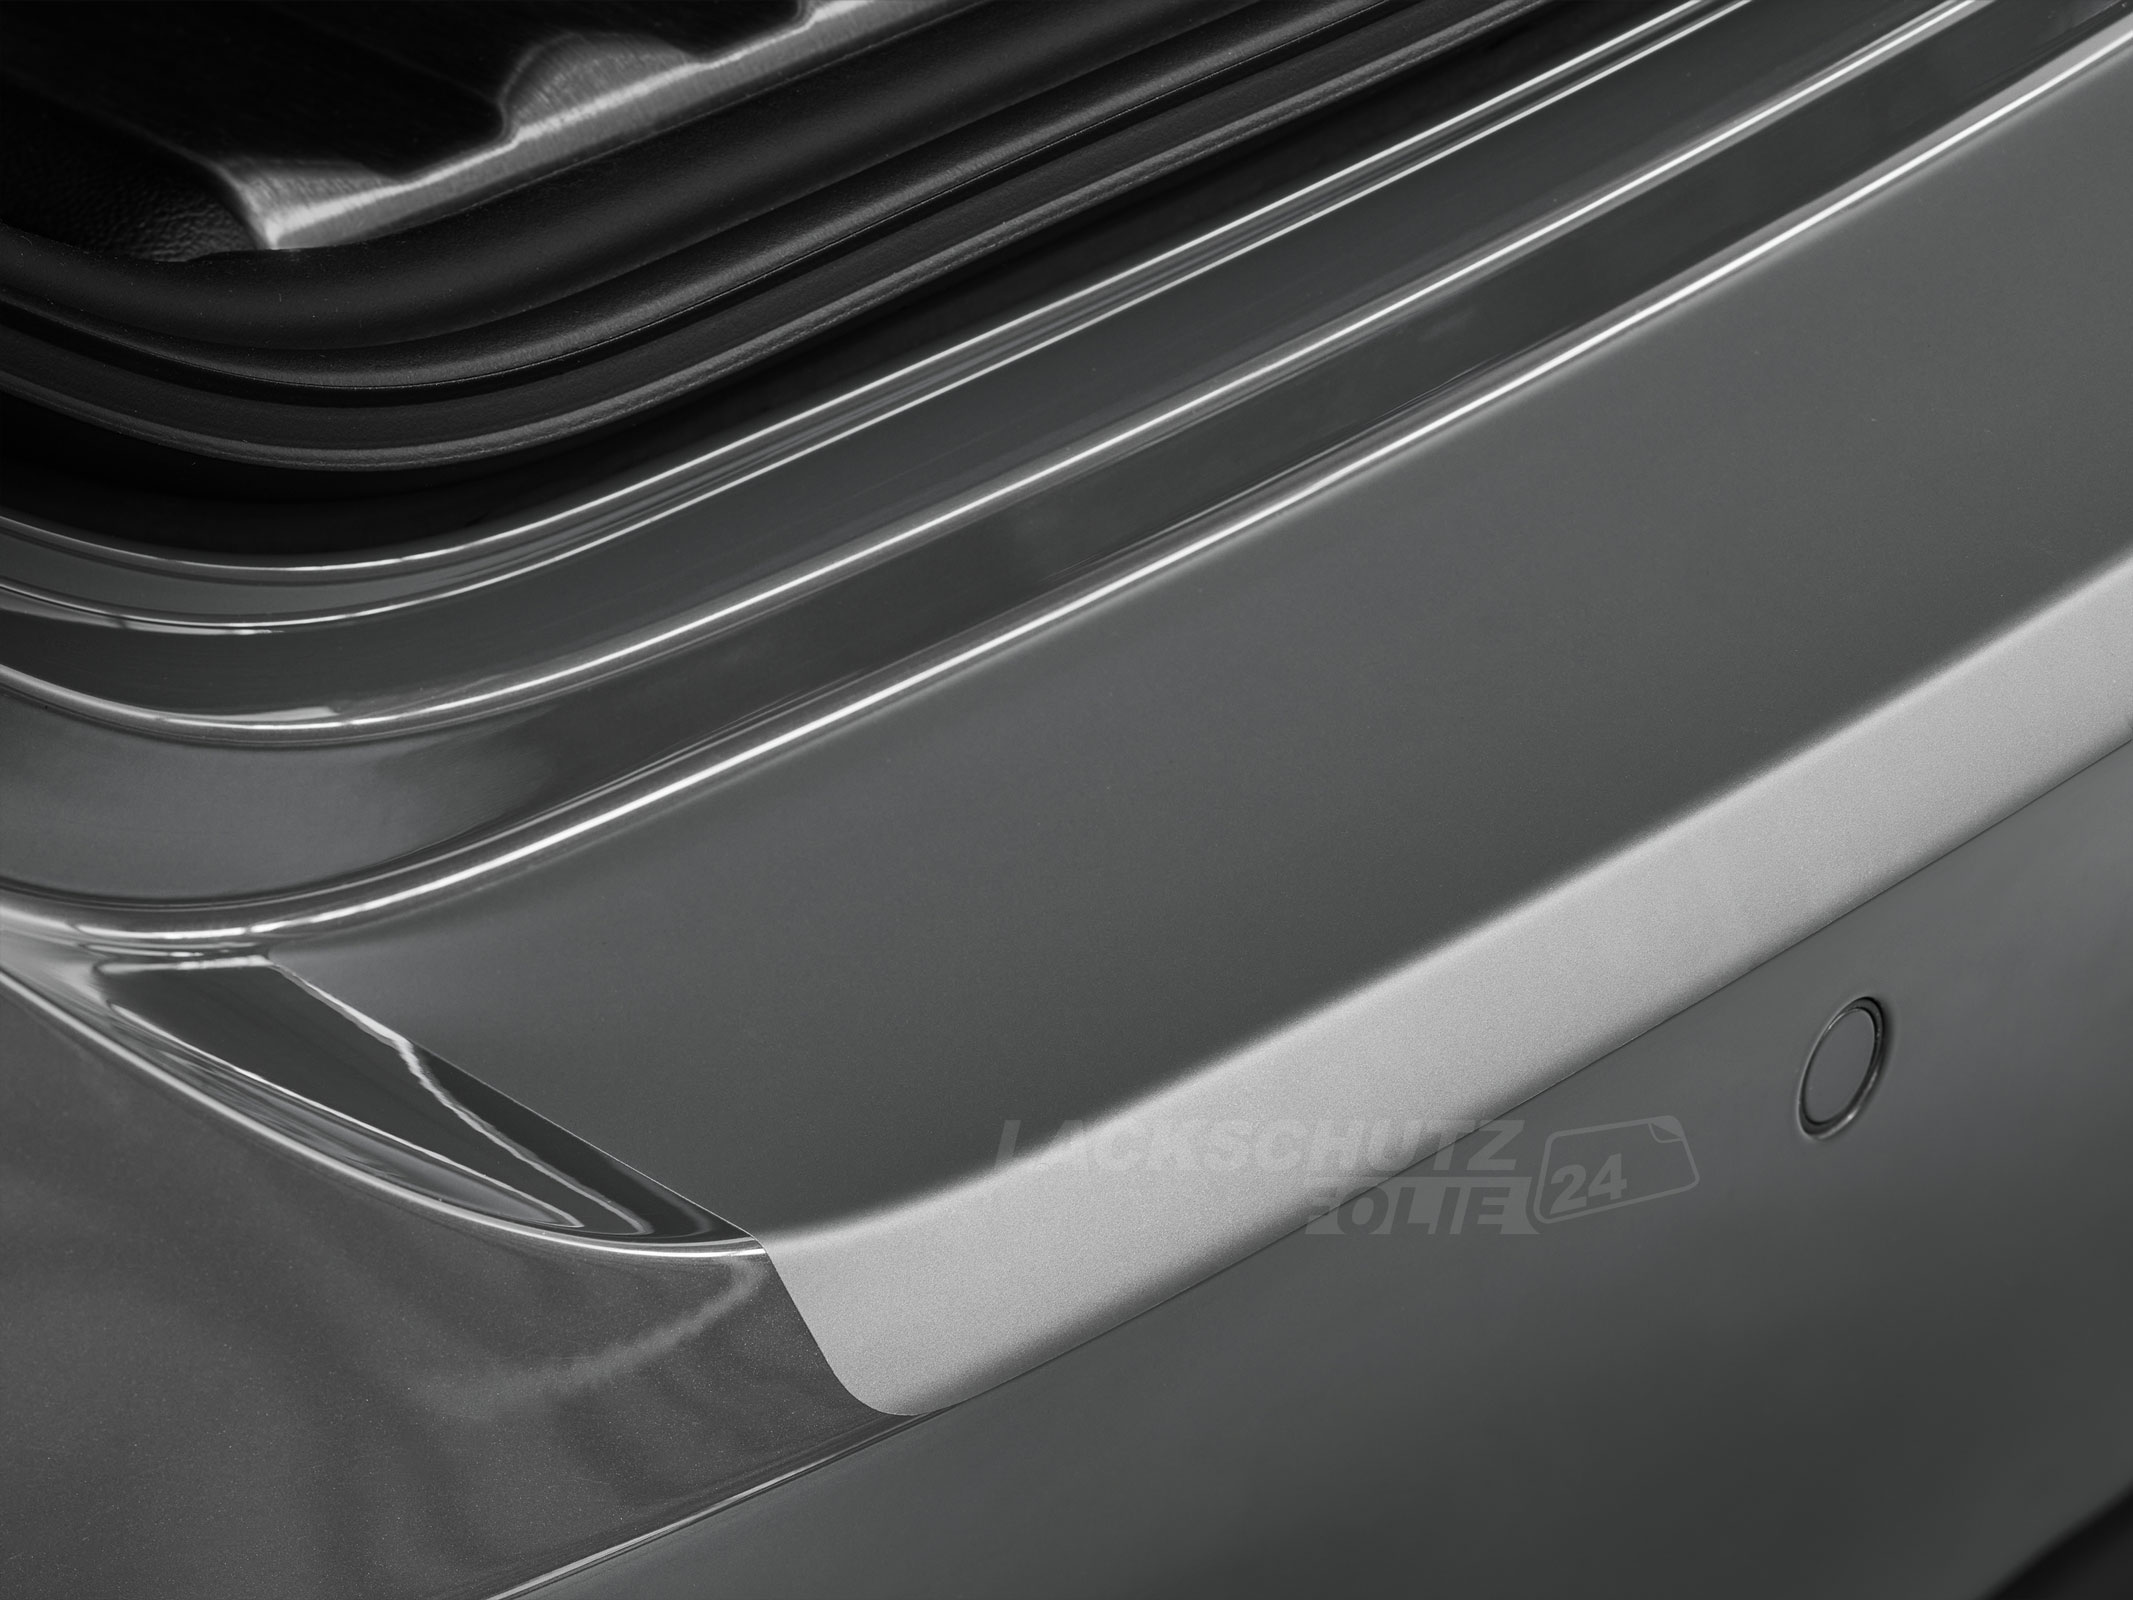 Ladekantenschutzfolie - Transparent Glatt MATT für BMW X3 Typ F25, BJ 11/2010-11/2017